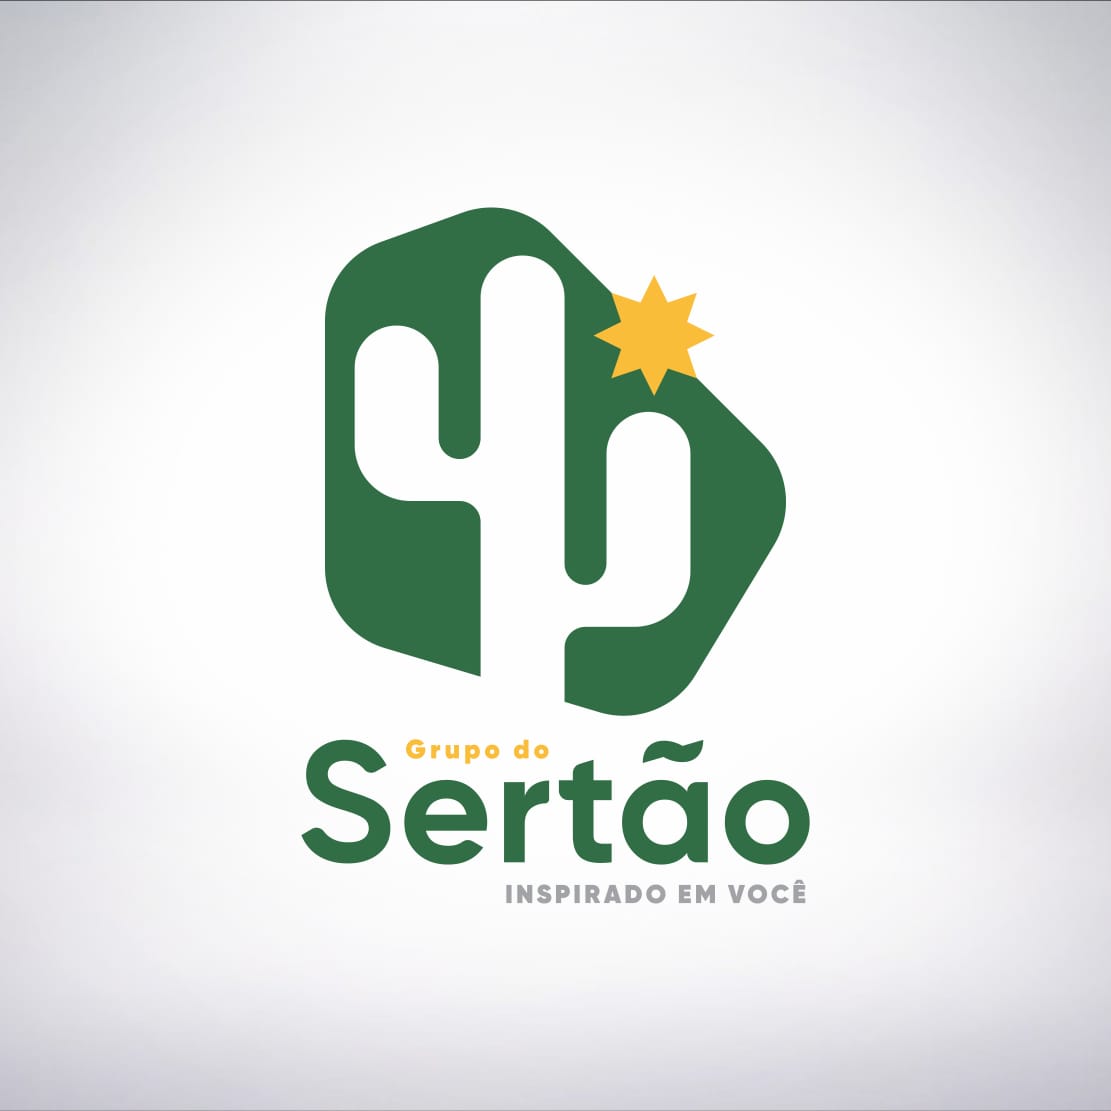 Grupo do Sertão é destaque na prestação de serviços no Nordeste brasileiro